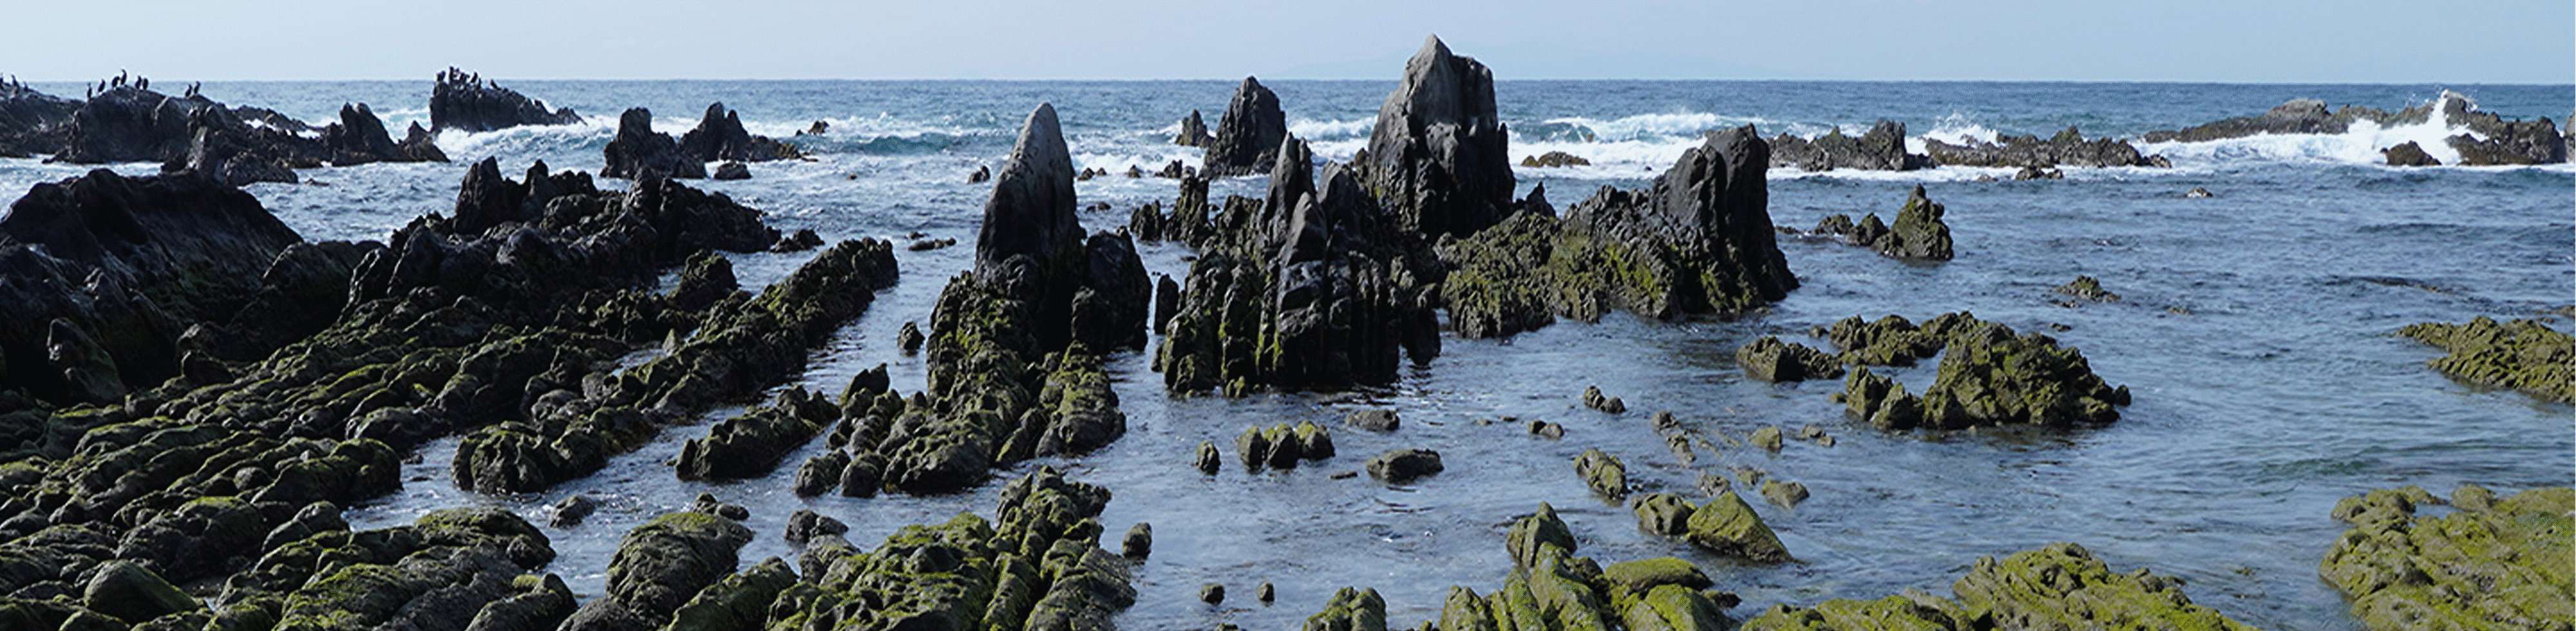 Slika skalnate tvorbe na obali